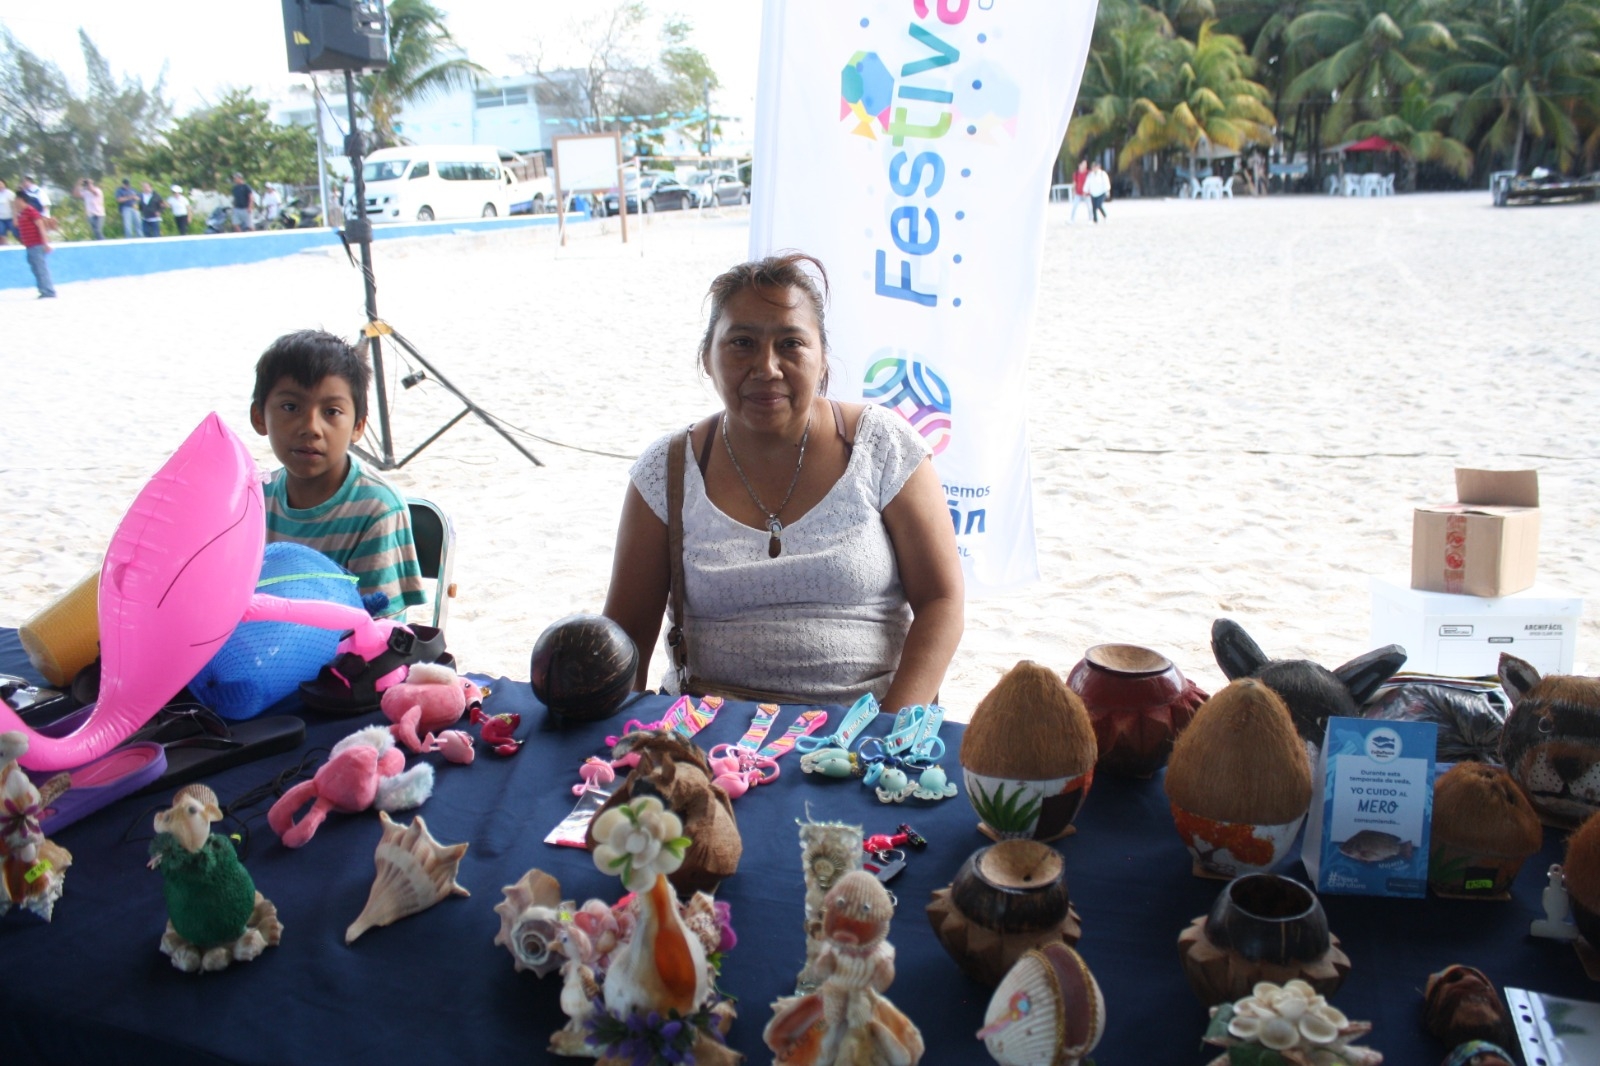 Unos 20 expositores participaron este año ofertando artesanías hechas con materiales de la playa como conchas, cocos, caracoles